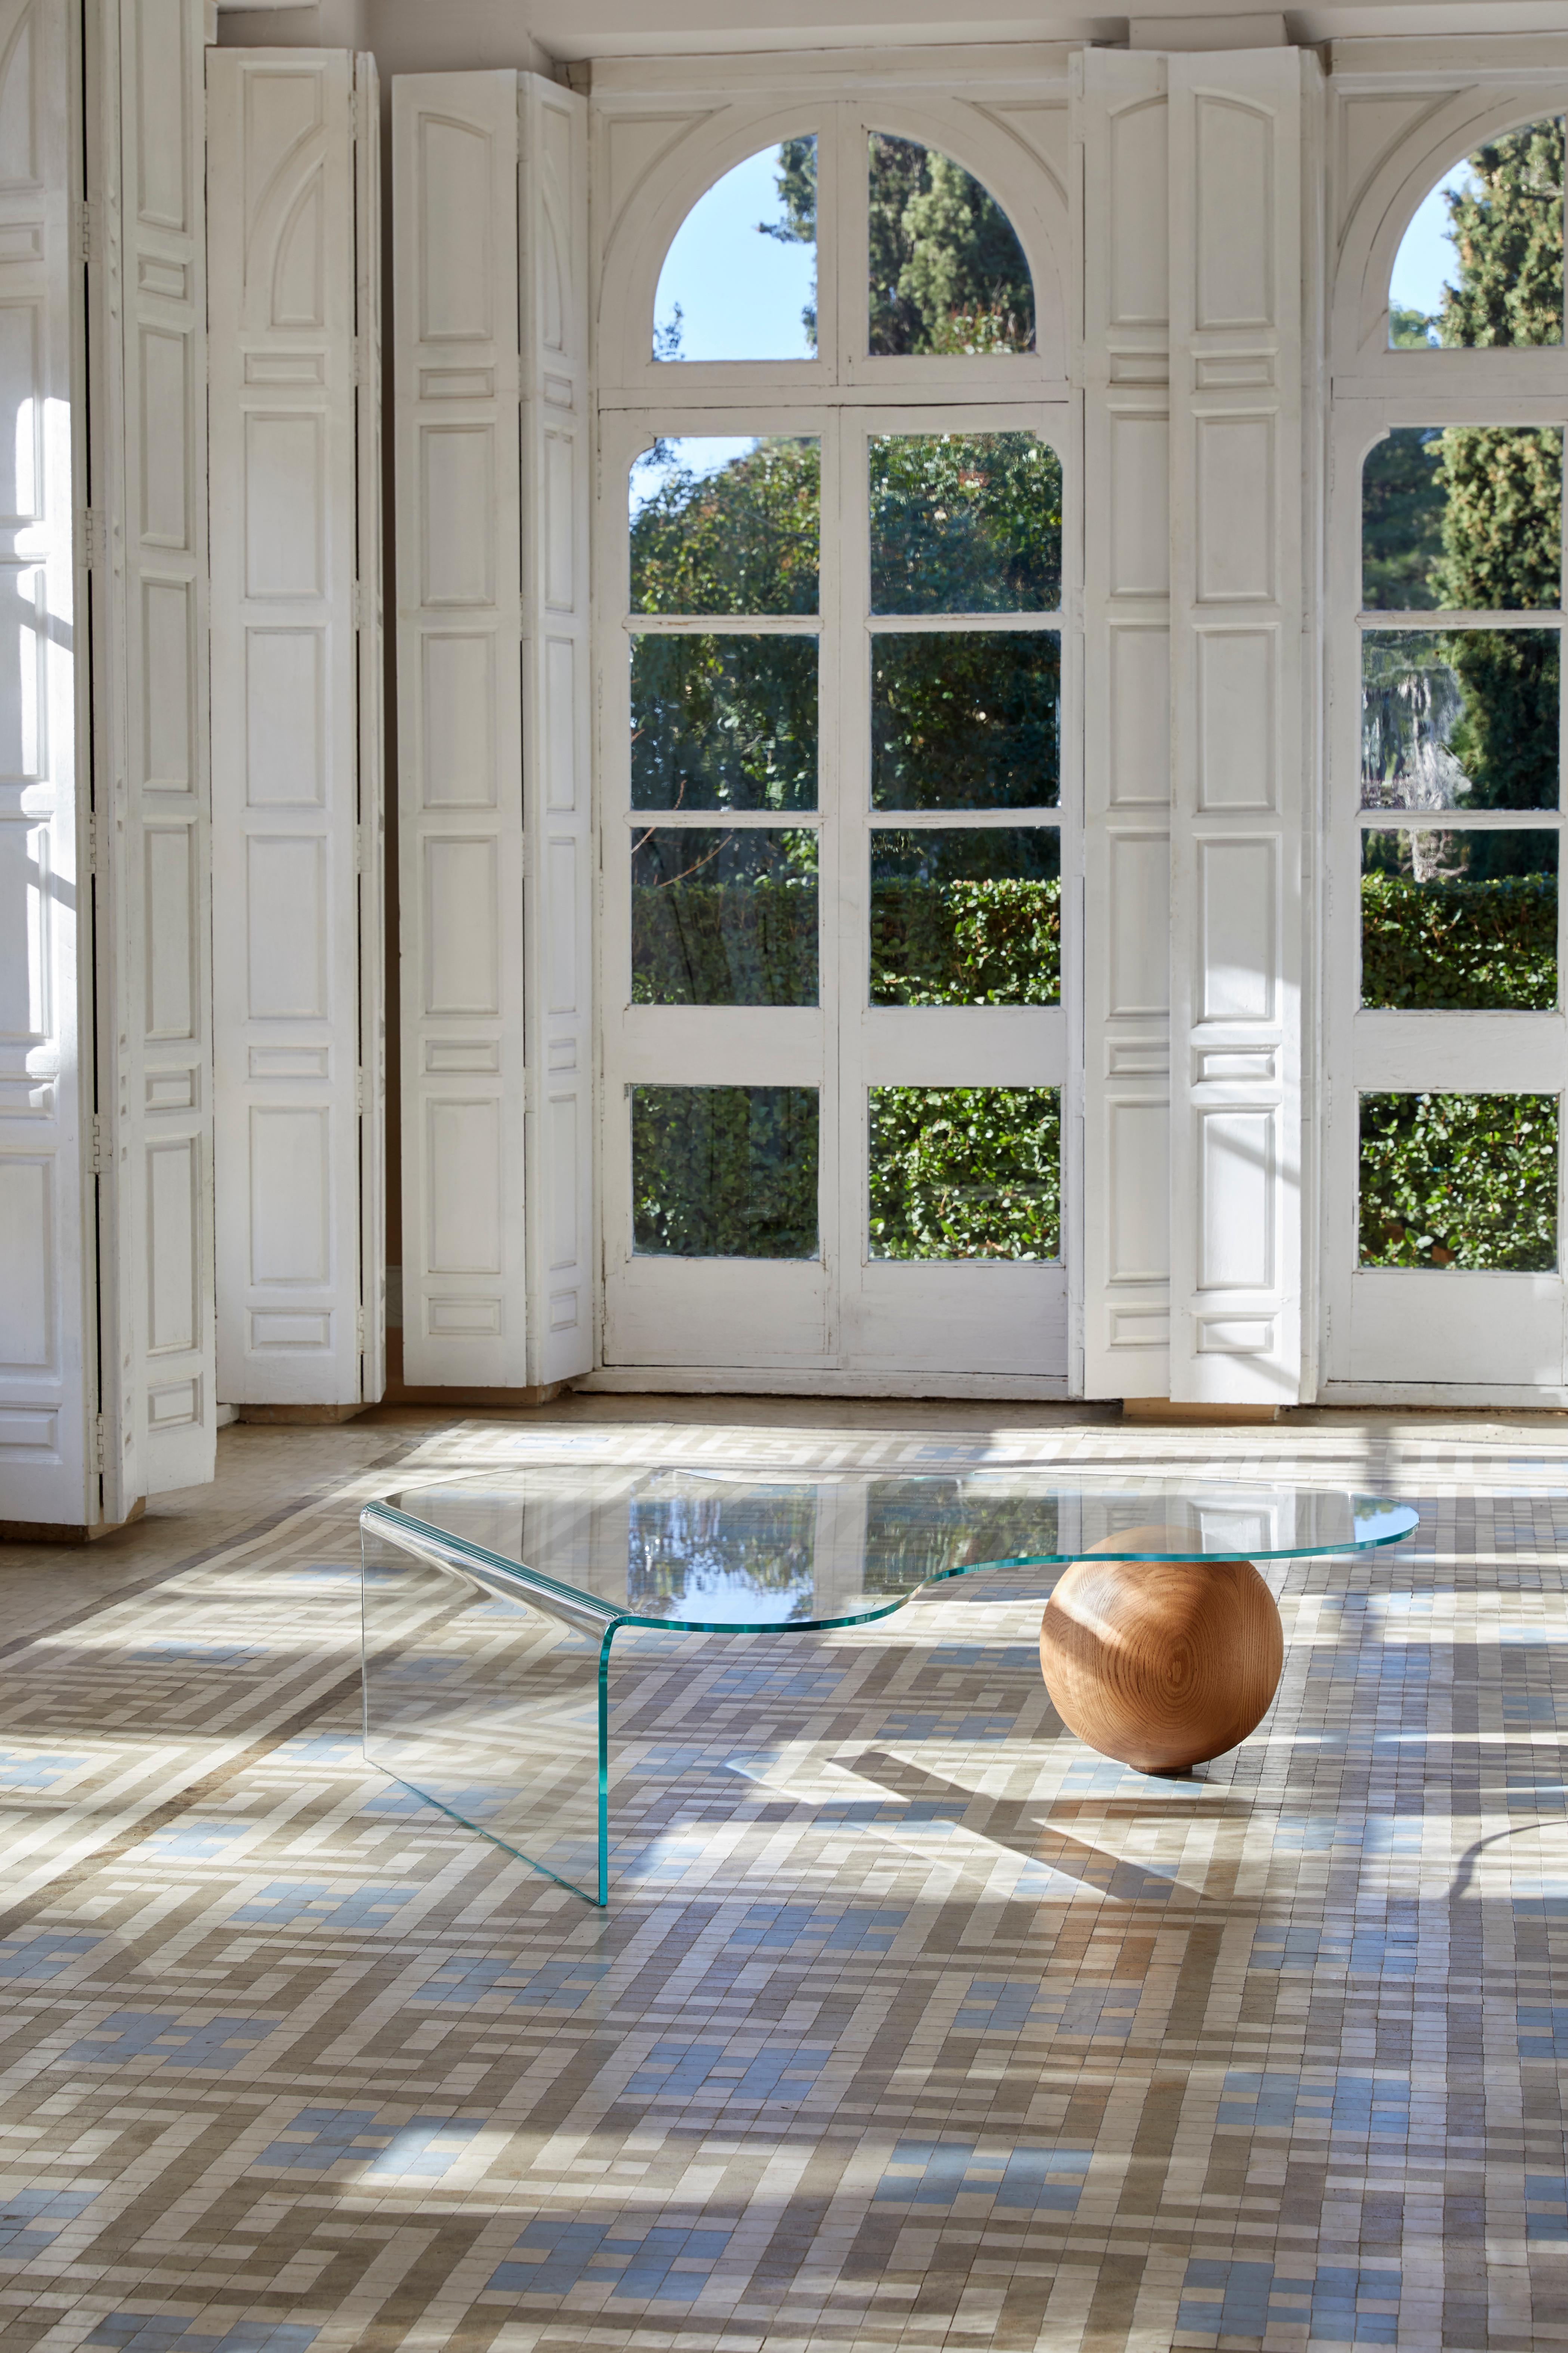 Organisch, launisch, elegant. Der GlobeWoo ist eine nahtlose Verbindung von Glas und Holz und verbindet eine geschwungene Form mit einer zeitgenössischen, minimalistischen Sensibilität. Das Ergebnis ist ein einzigartiger Tisch, der sich sowohl für